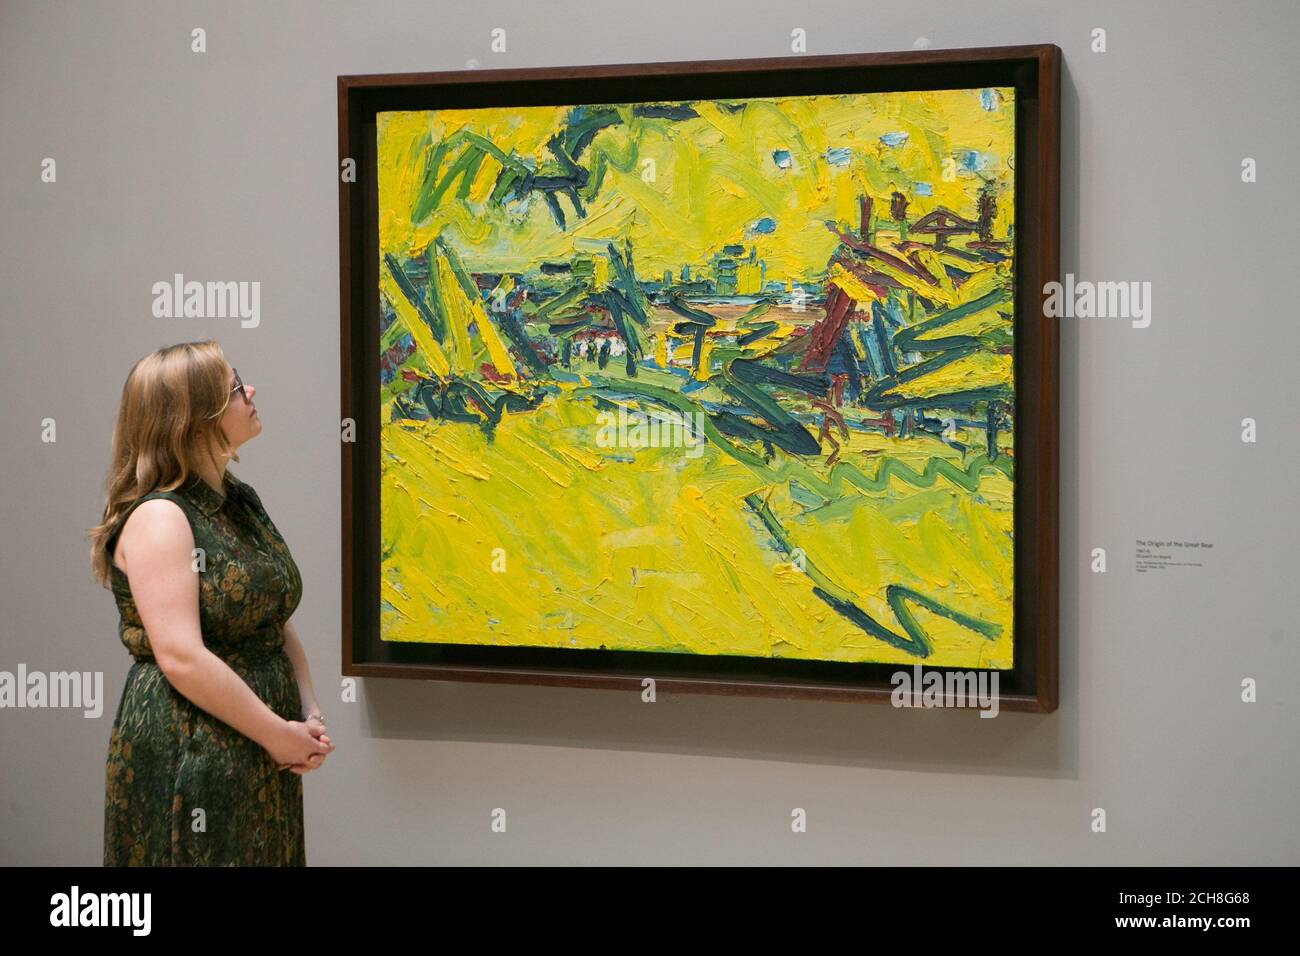 Les employés de la galerie regardent un tableau de Frank Auerbach intitulé « l'origine du Grand Ours », 1967-8, à l'occasion d'une photo pour une nouvelle exposition de l'artiste britannique au Tate Britain à Londres. Banque D'Images